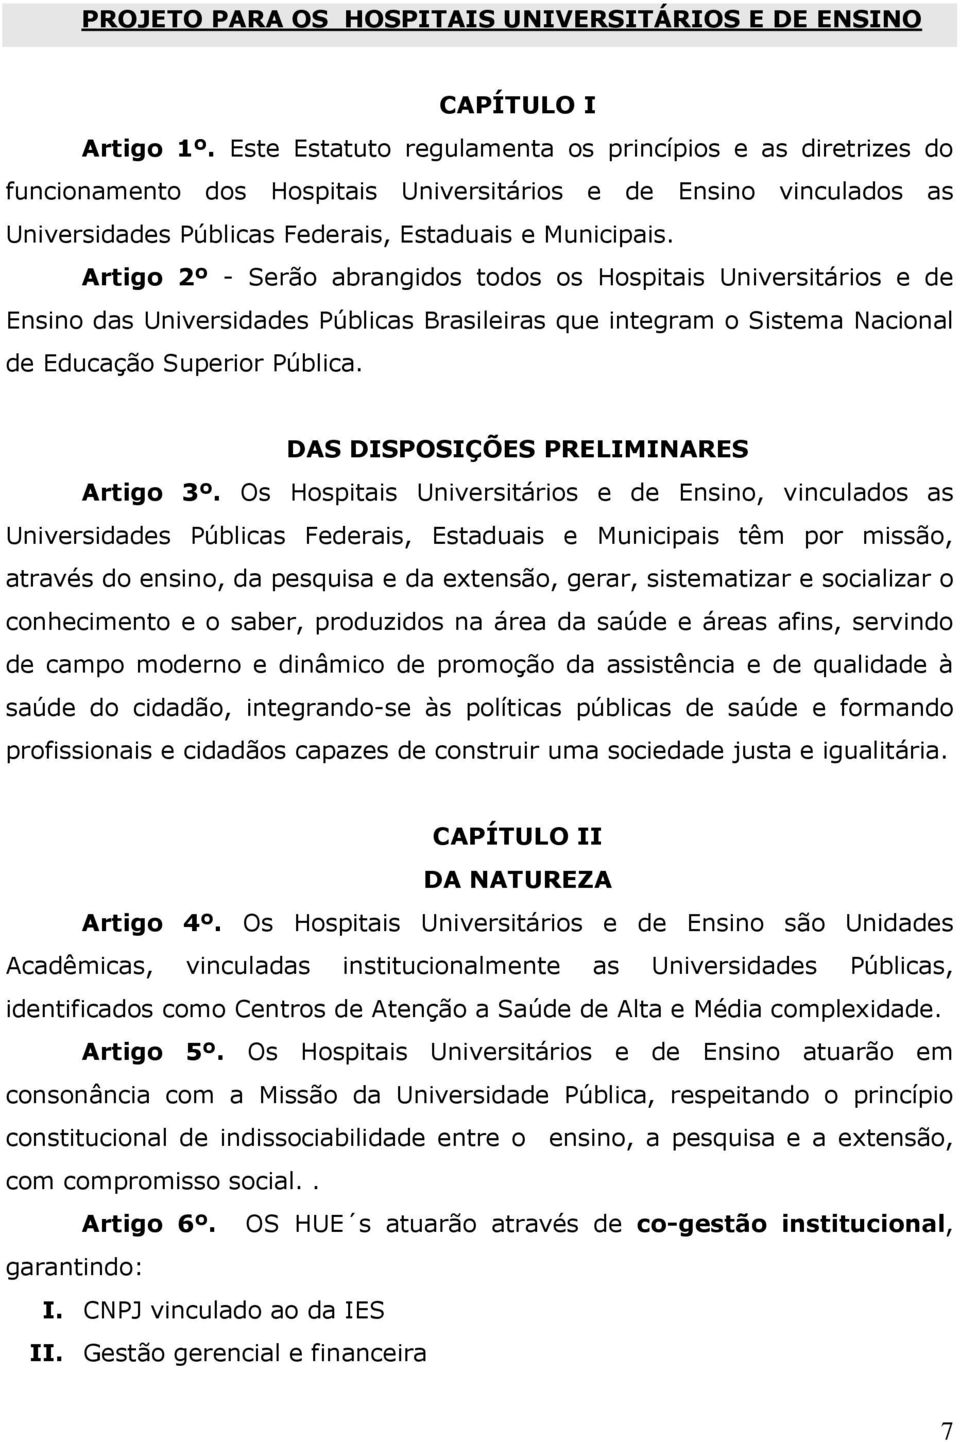 Artigo 2º - Serão abrangidos todos os Hospitais Universitários e de Ensino das Universidades Públicas Brasileiras que integram o Sistema Nacional de Educação Superior Pública.